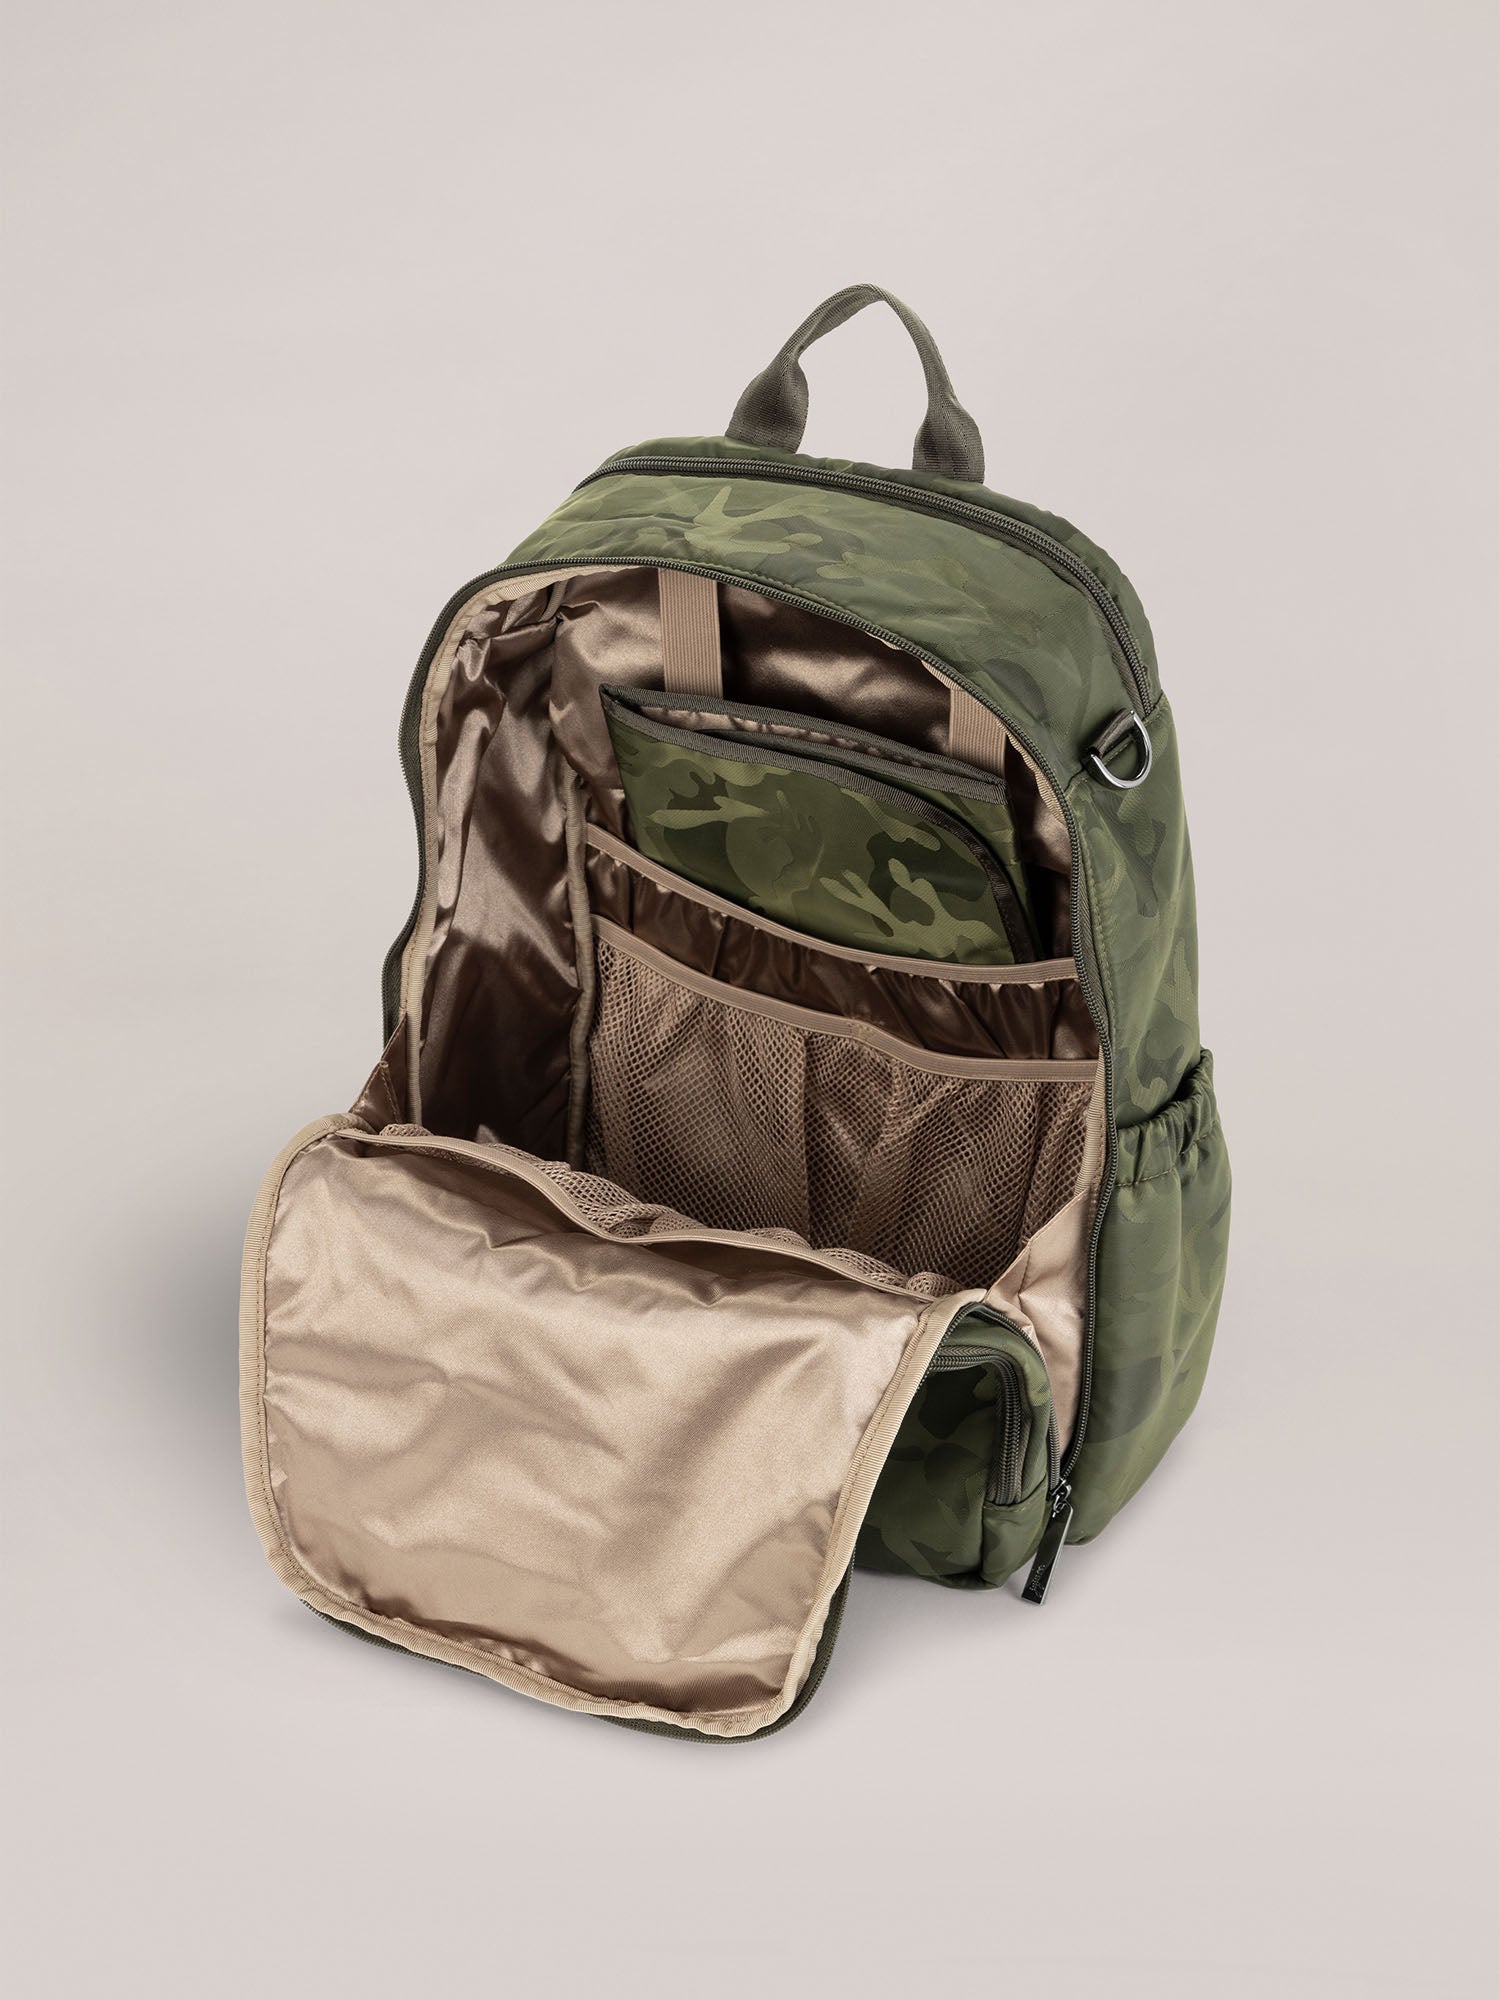 Zealous Backpack - Camo Green